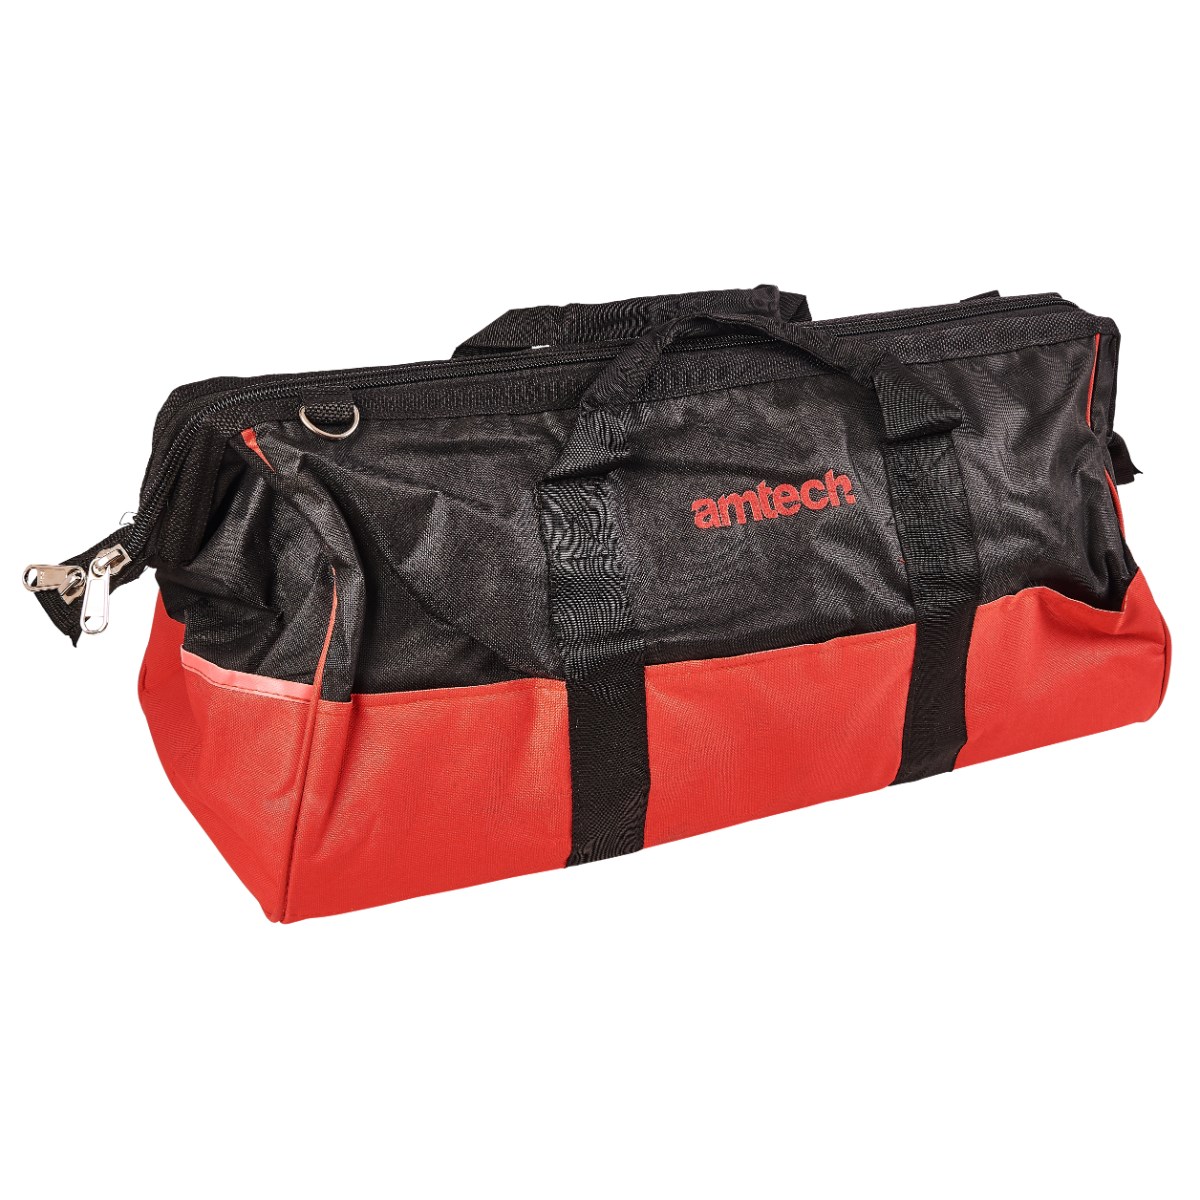 24" Heavy Duty Tool Bag Pro Multi Purpose DIY Storage Water Resistant, N0525 